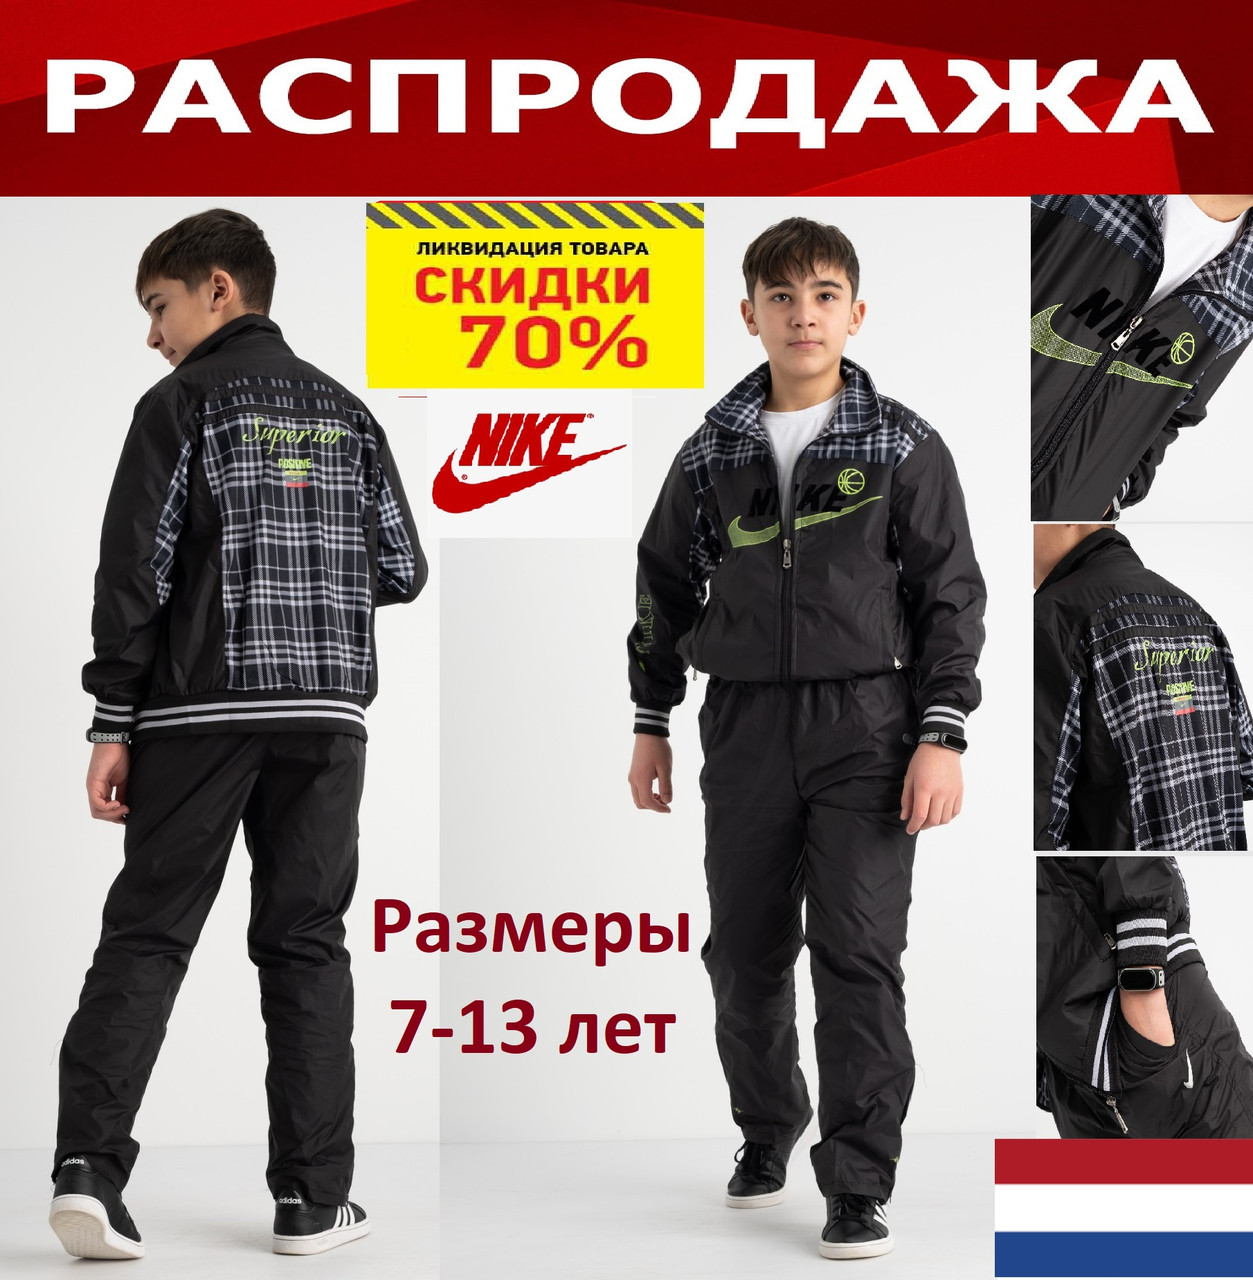 Спортивний дитячий костюм Nike на хлопчика 7-13 років, оригінальний, фірмовий Найк. Нидерланды.